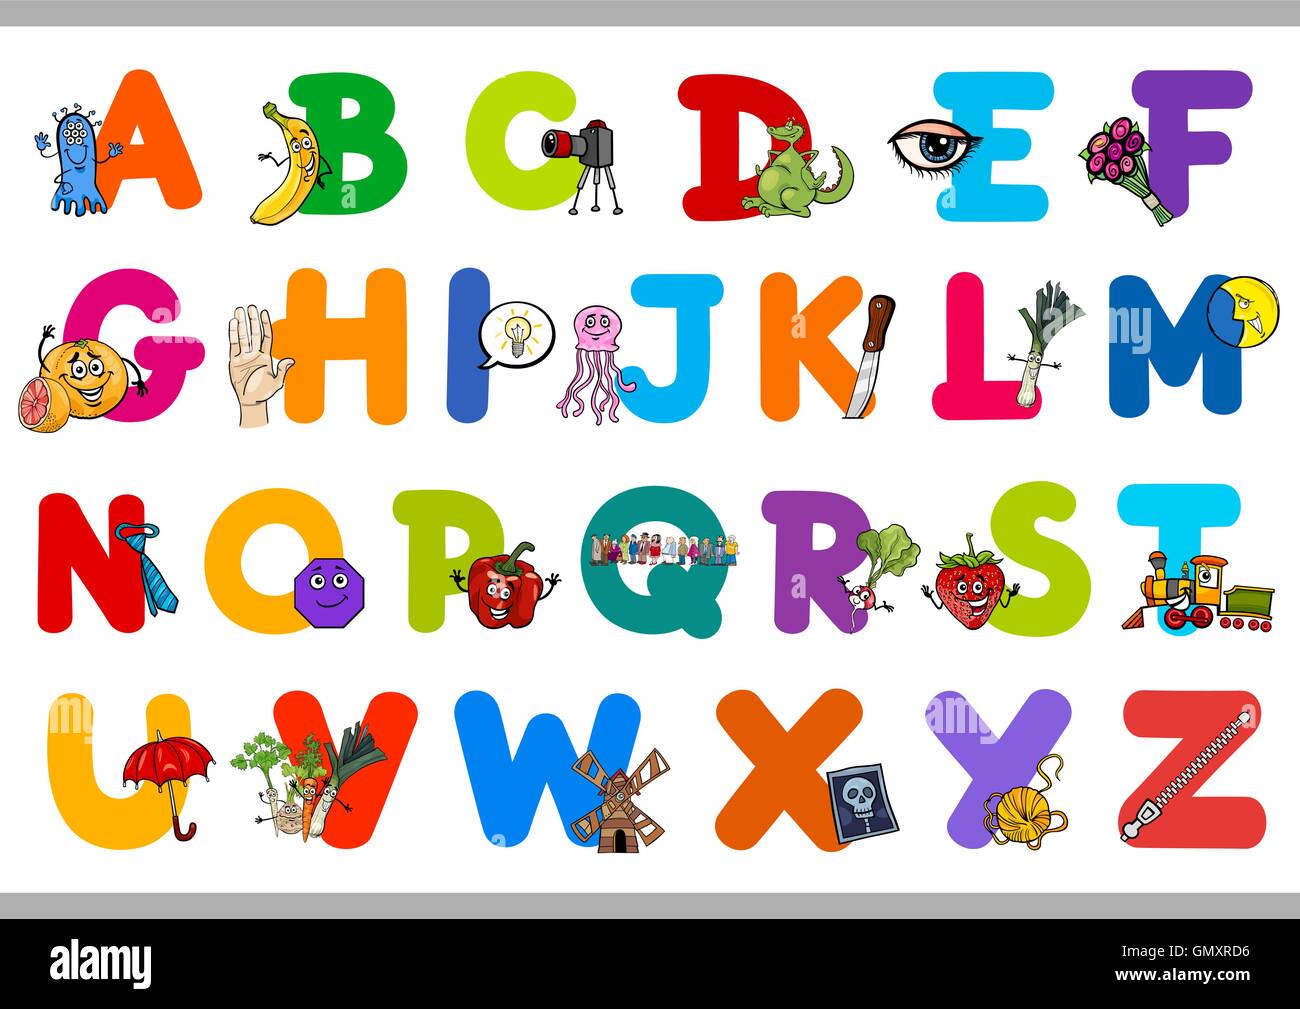 educational alphabet for children Stock Vector Image & Art - Alamy